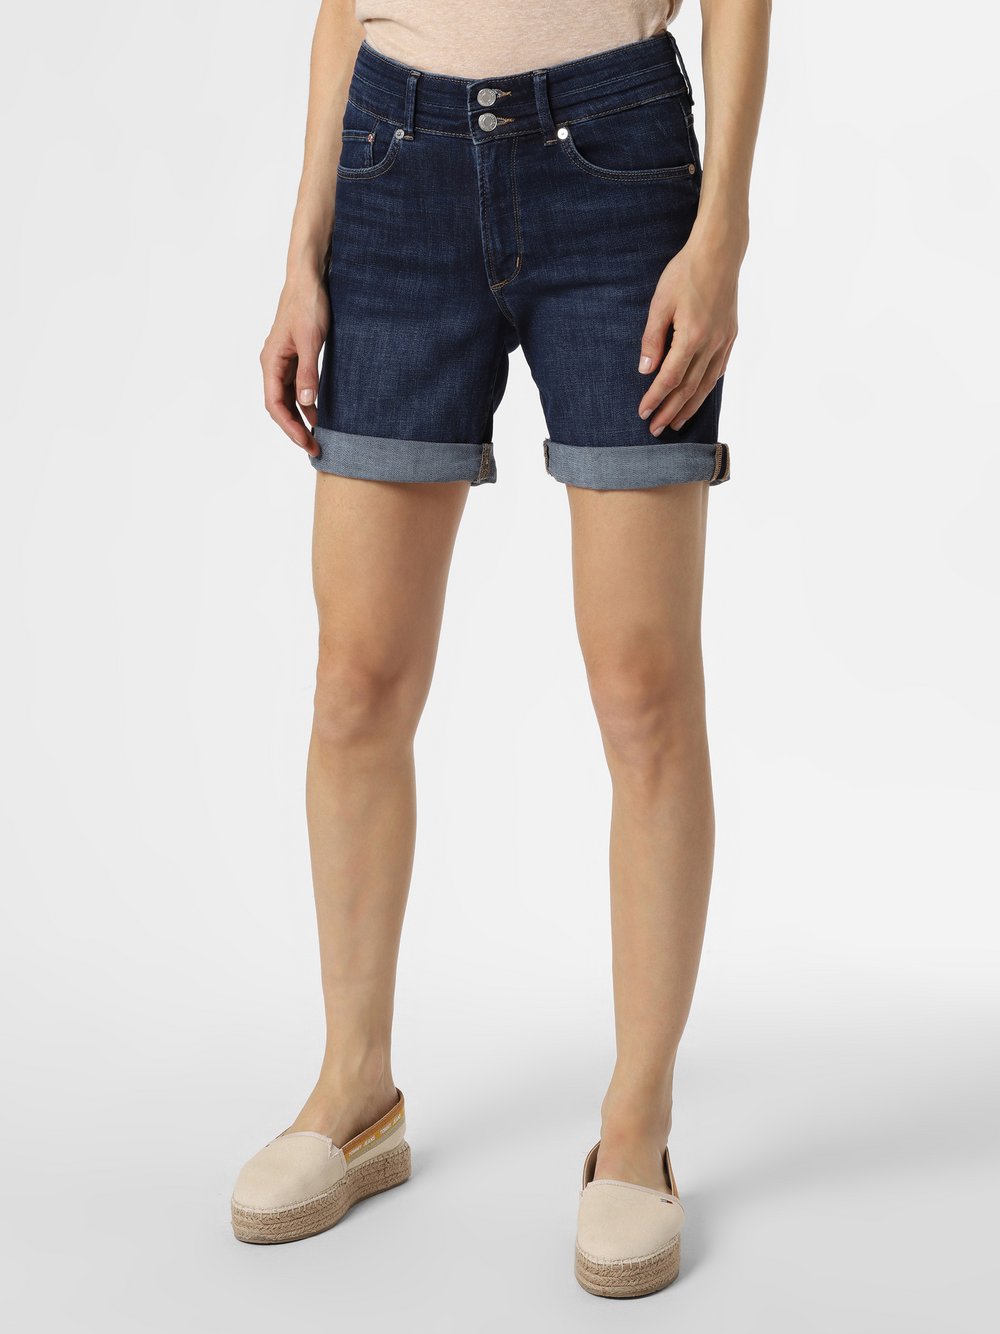 S.Oliver - Damskie krótkie spodenki jeansowe, niebieski